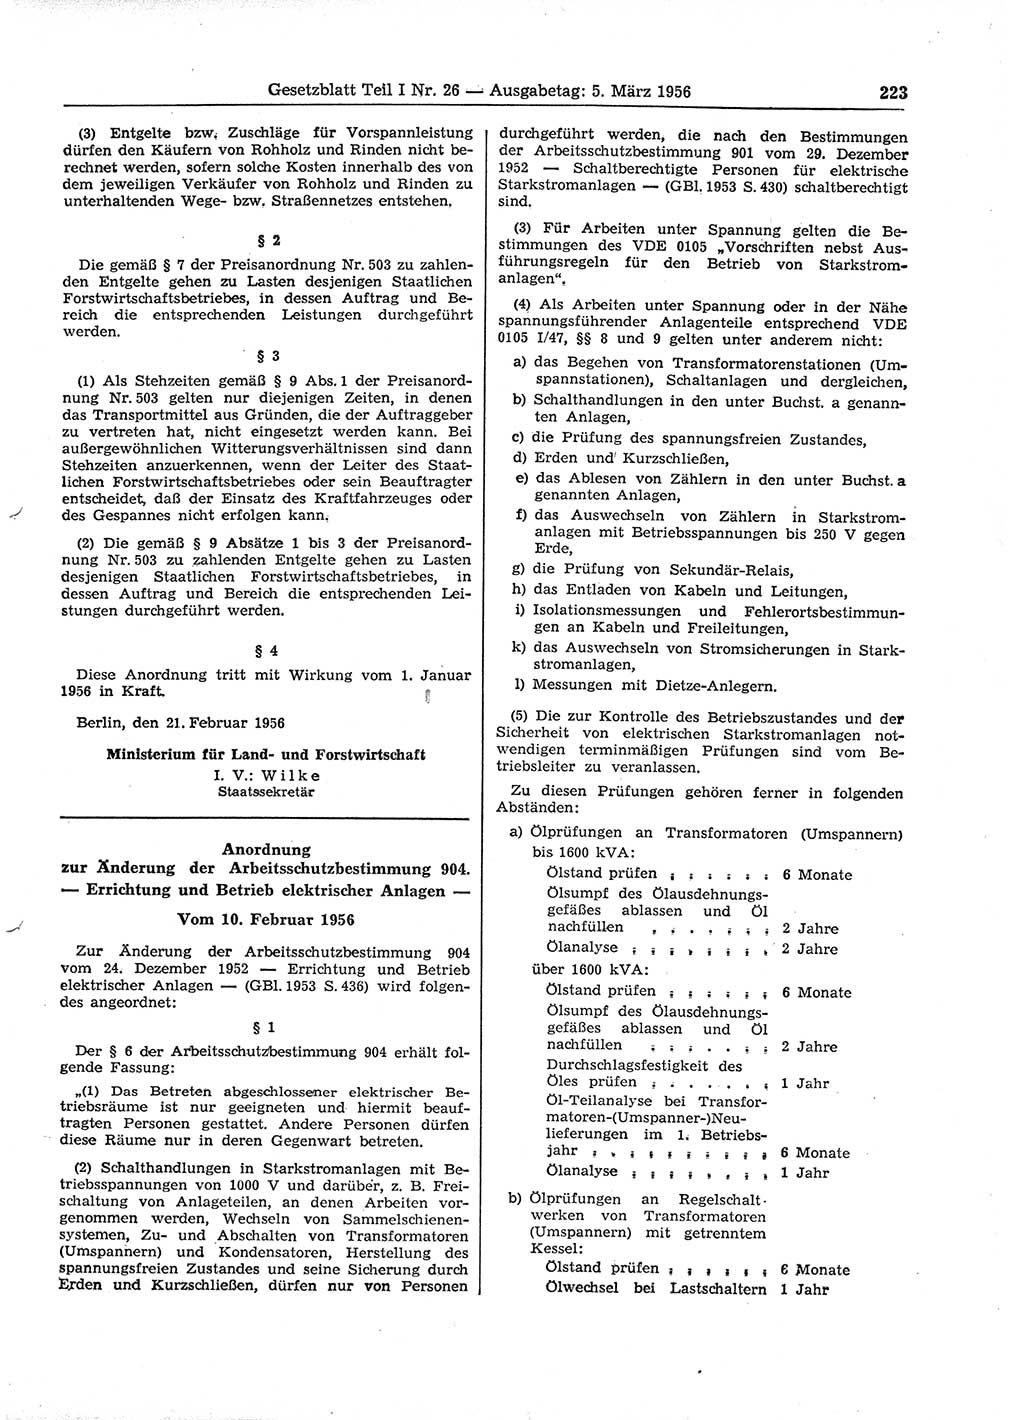 Gesetzblatt (GBl.) der Deutschen Demokratischen Republik (DDR) Teil Ⅰ 1956, Seite 223 (GBl. DDR Ⅰ 1956, S. 223)